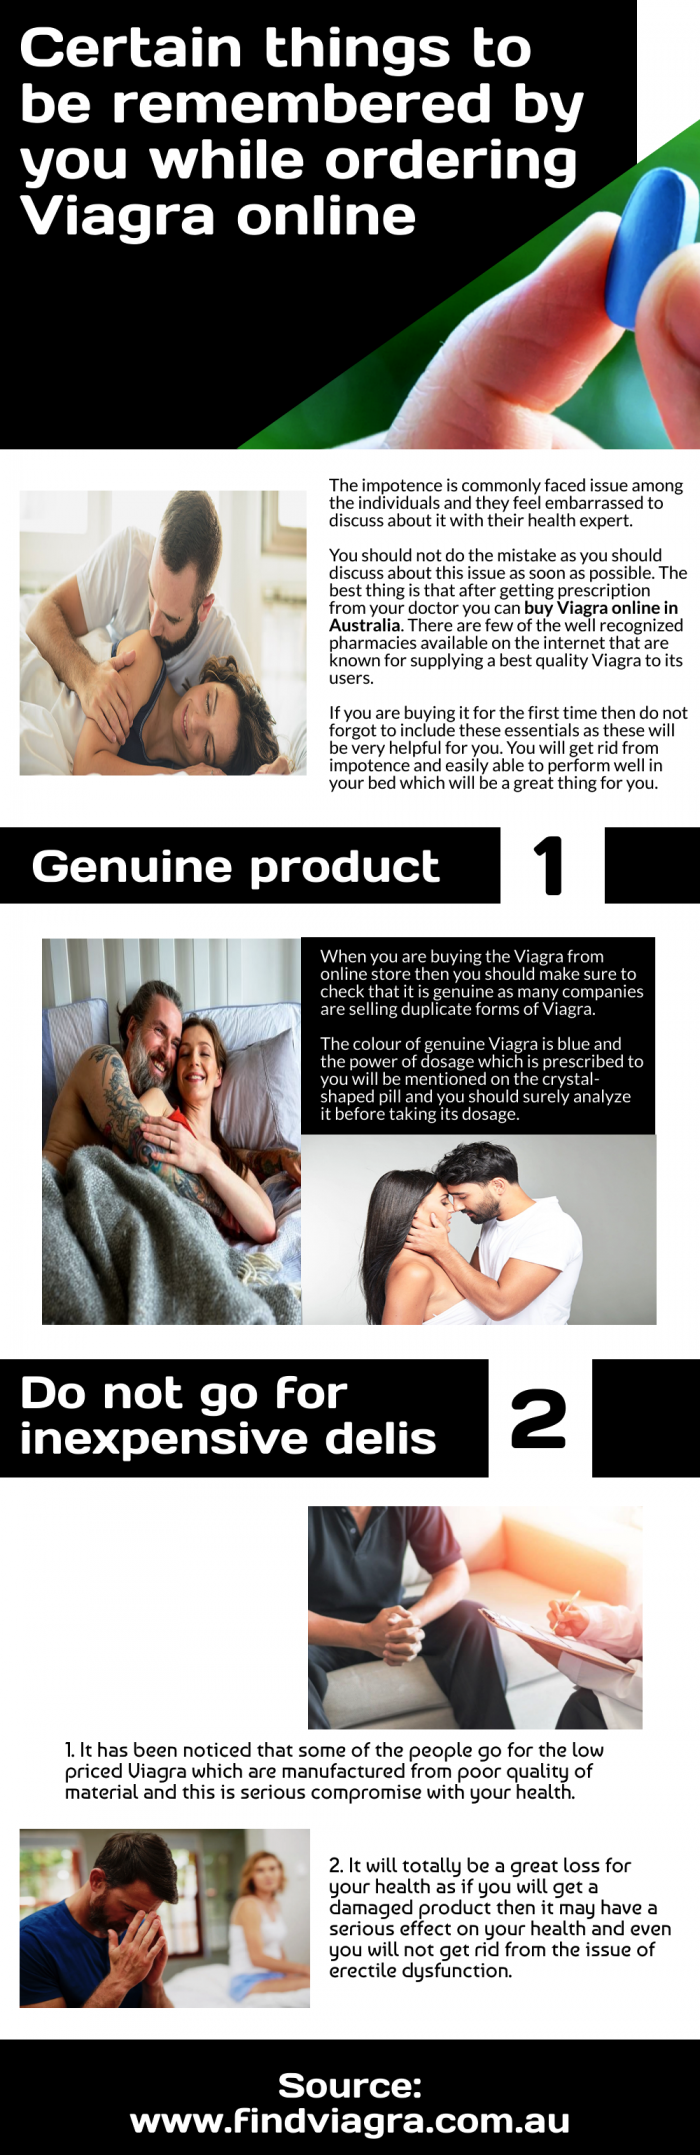 How to buy Viagra online in Australia